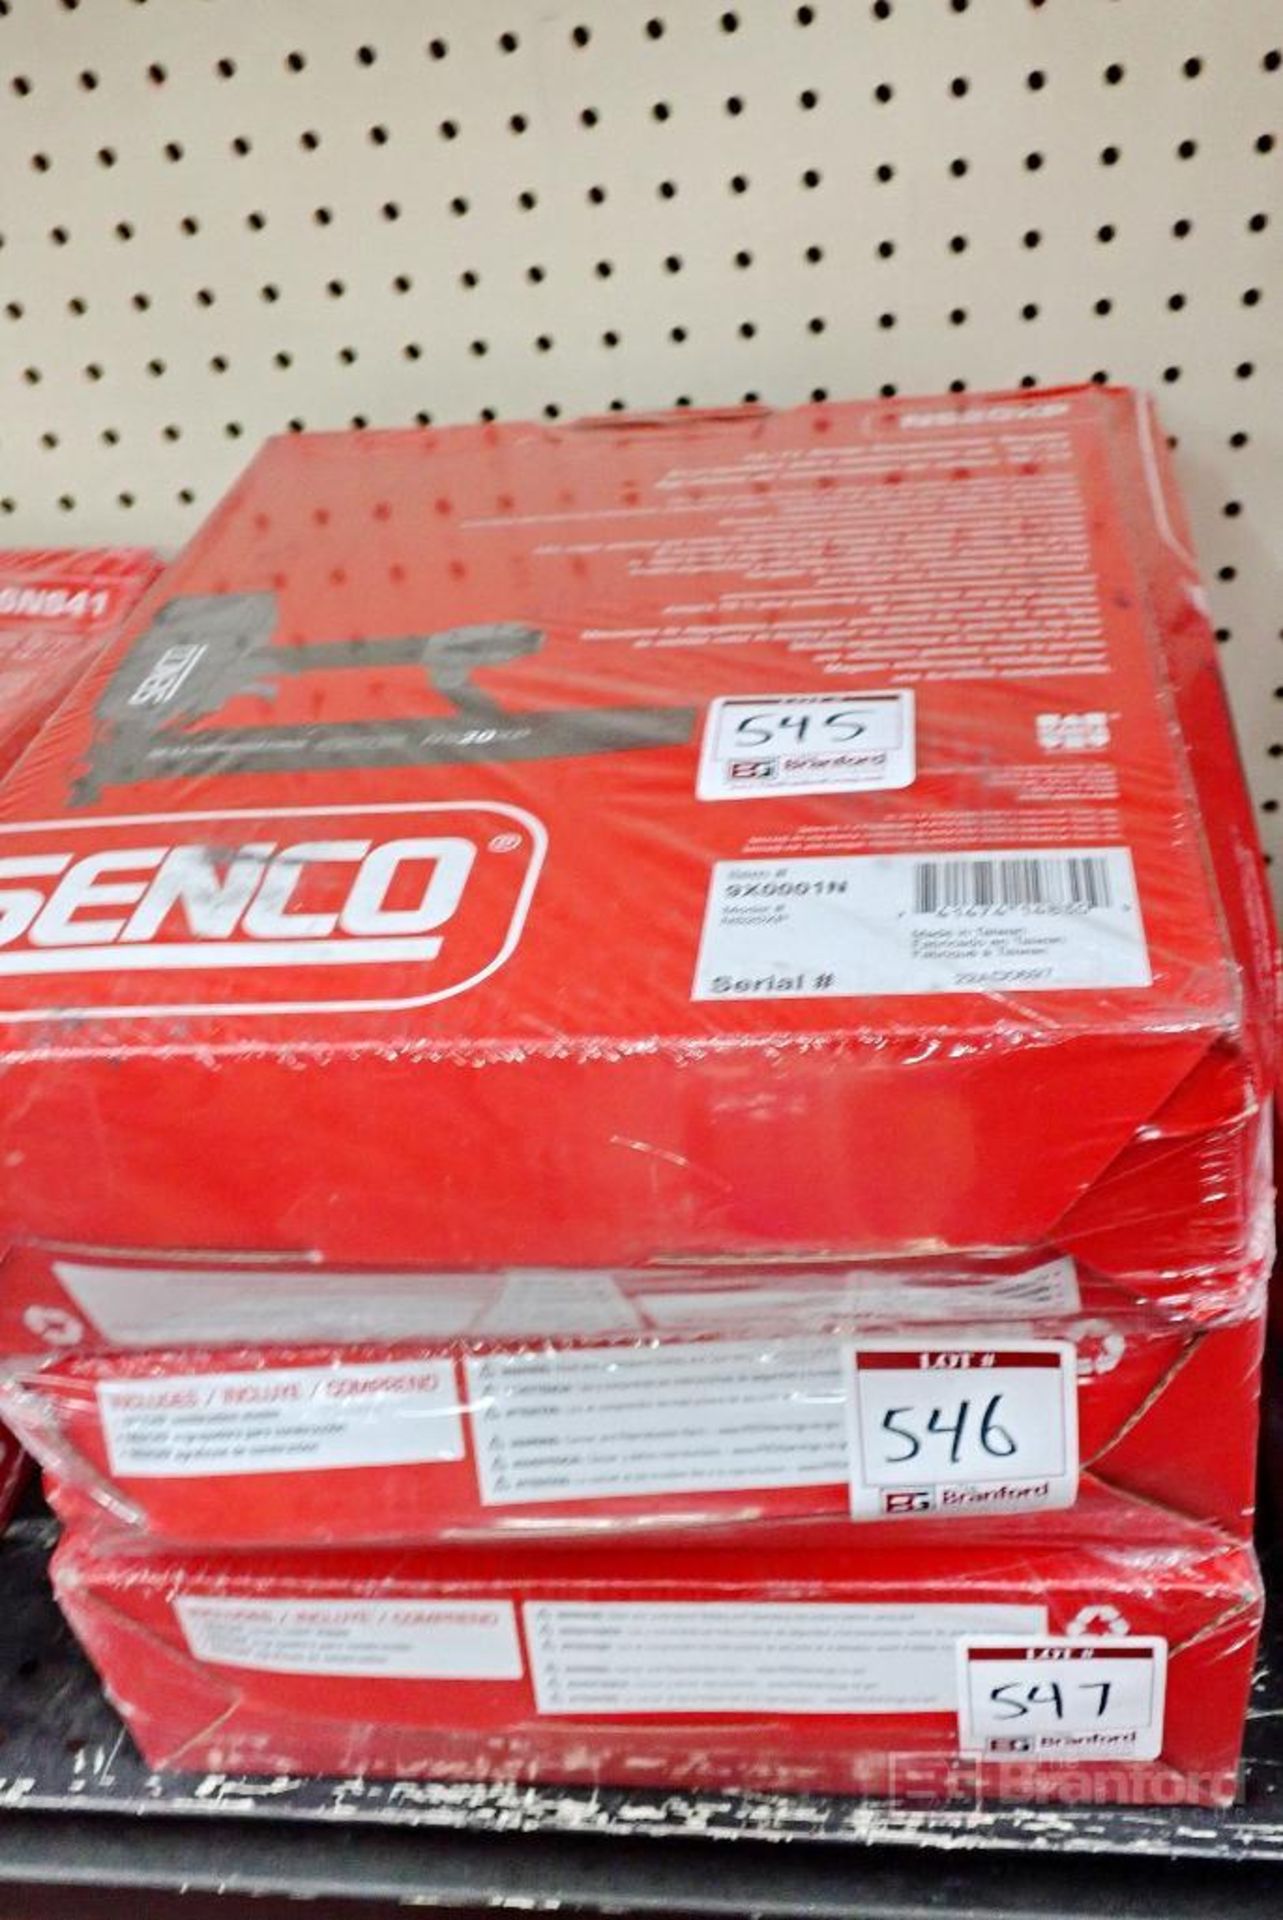 Senco NS20XP 16/17 Gauge Construction Stapler